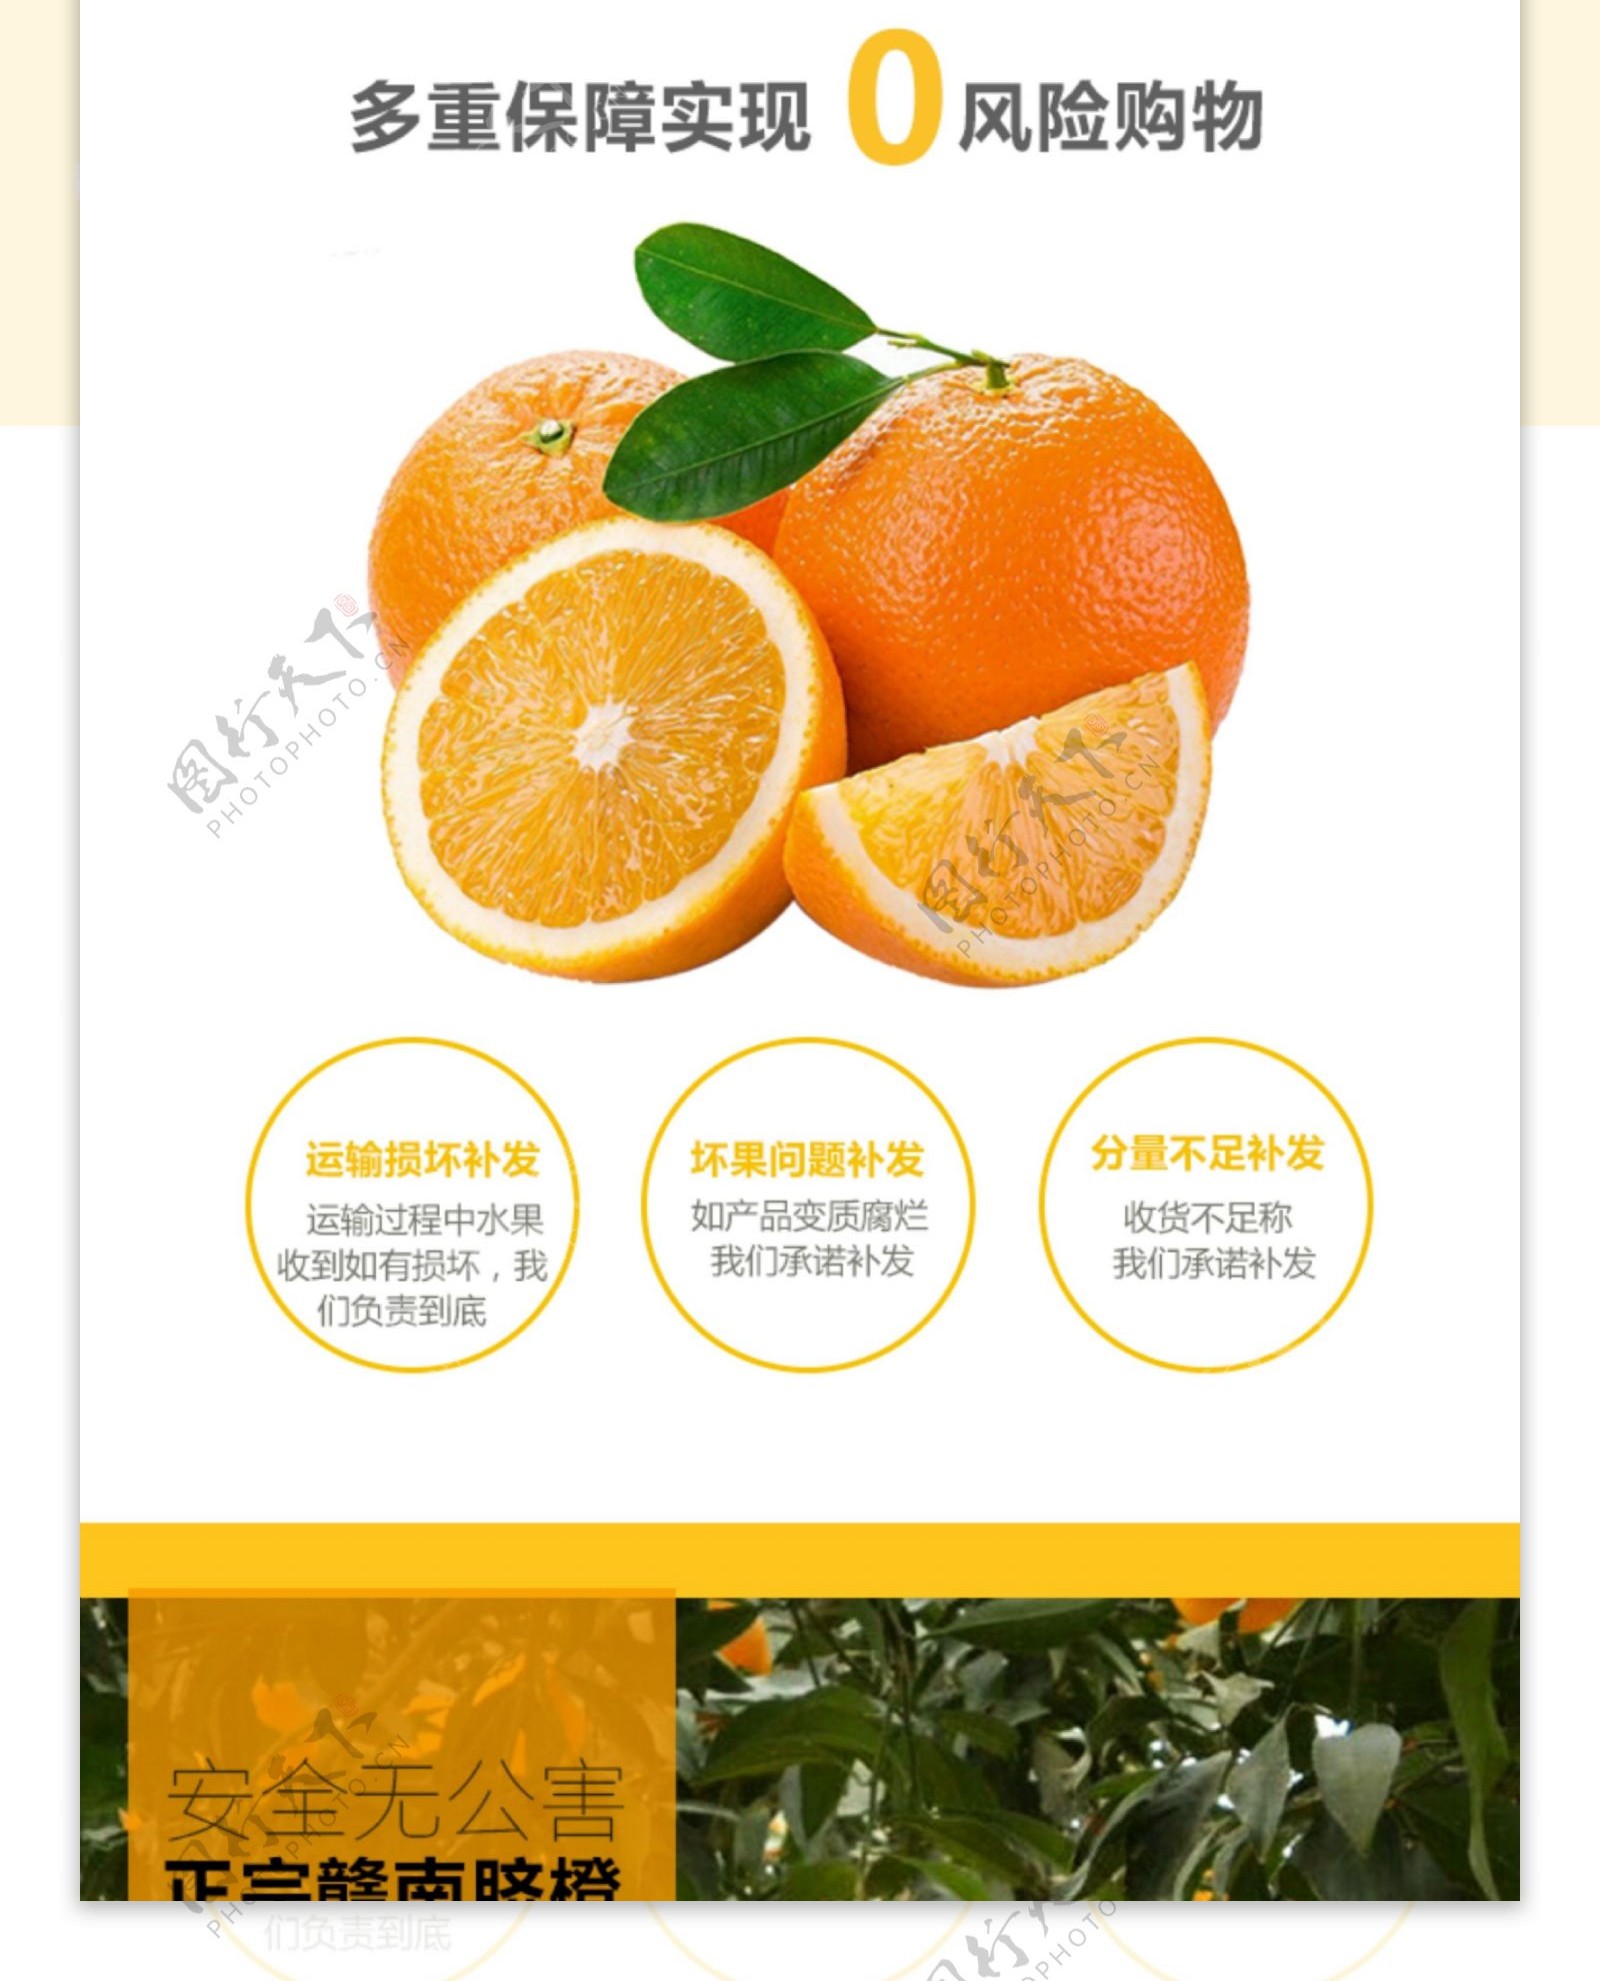 橙子详情页